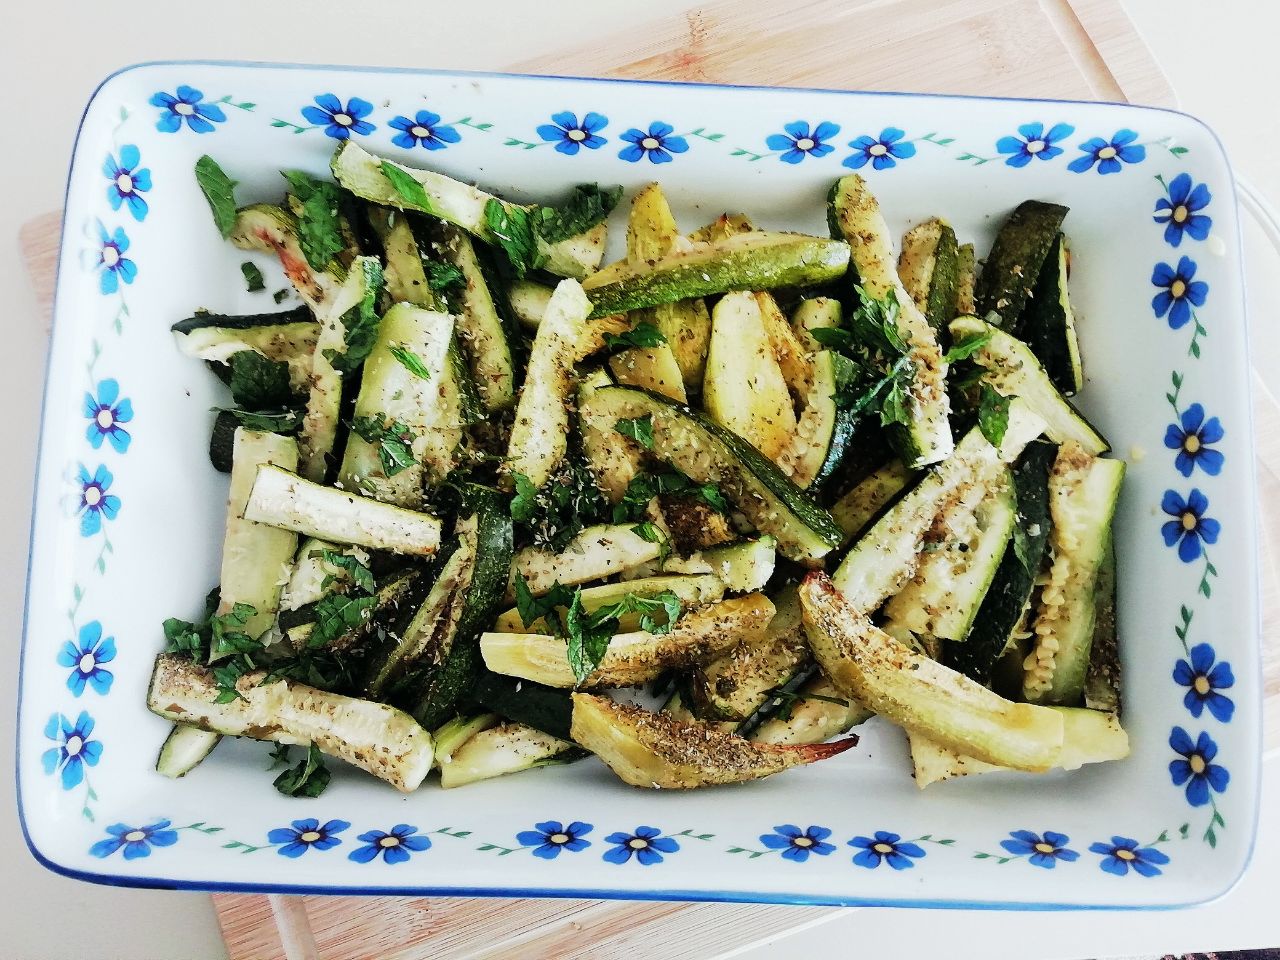 Ricette semplici e veloci senza burro e senza glutine: zucchine al forno con erbe aromatiche!